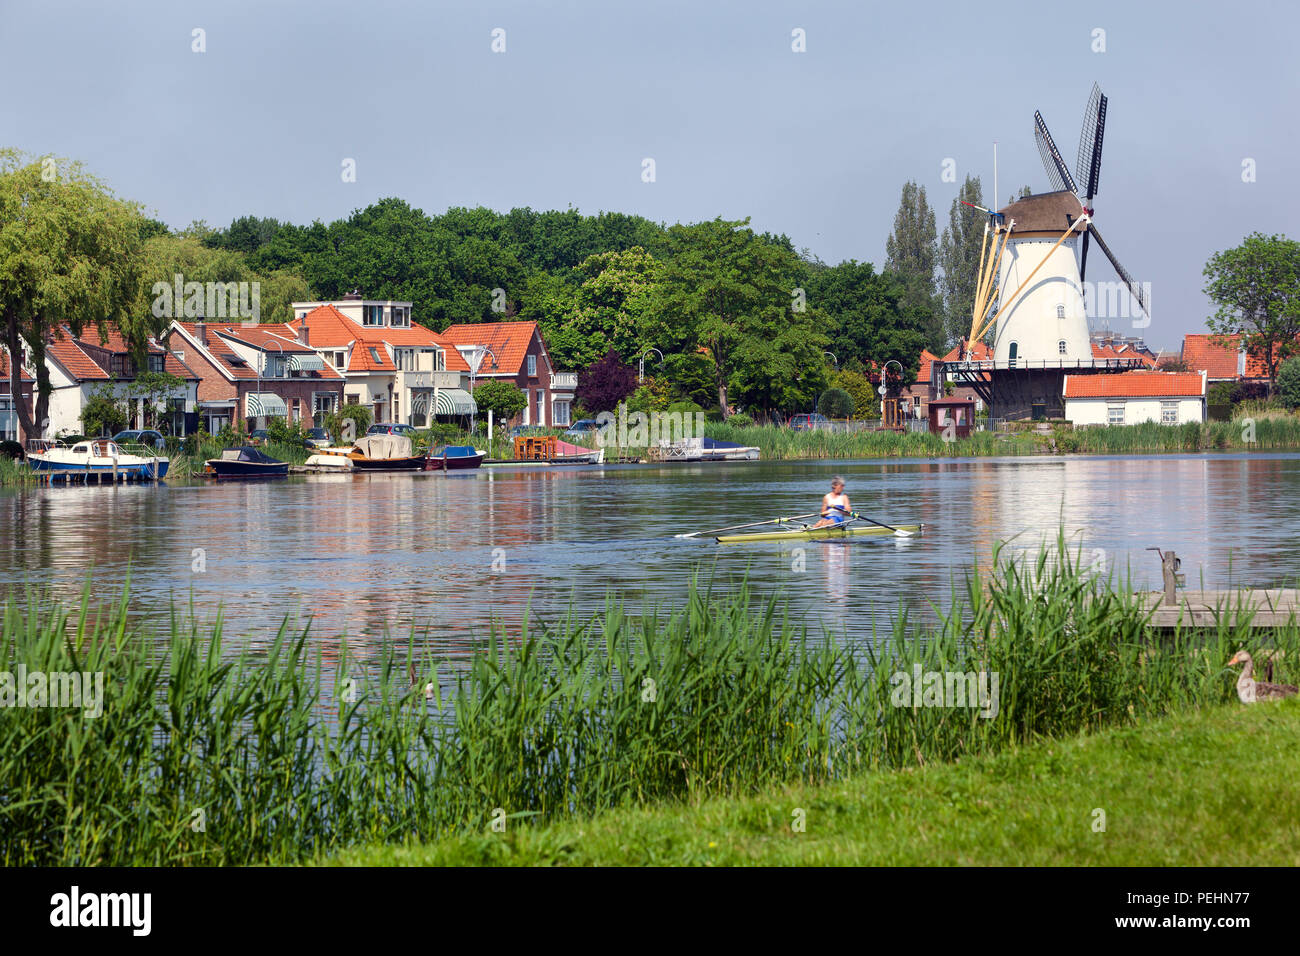 La rivière idyllique Rotte à Rotterdam avec un vieux moulin blanc et quelques maisons à l'autre côté tandis qu'un bateau à rames est passant par Banque D'Images